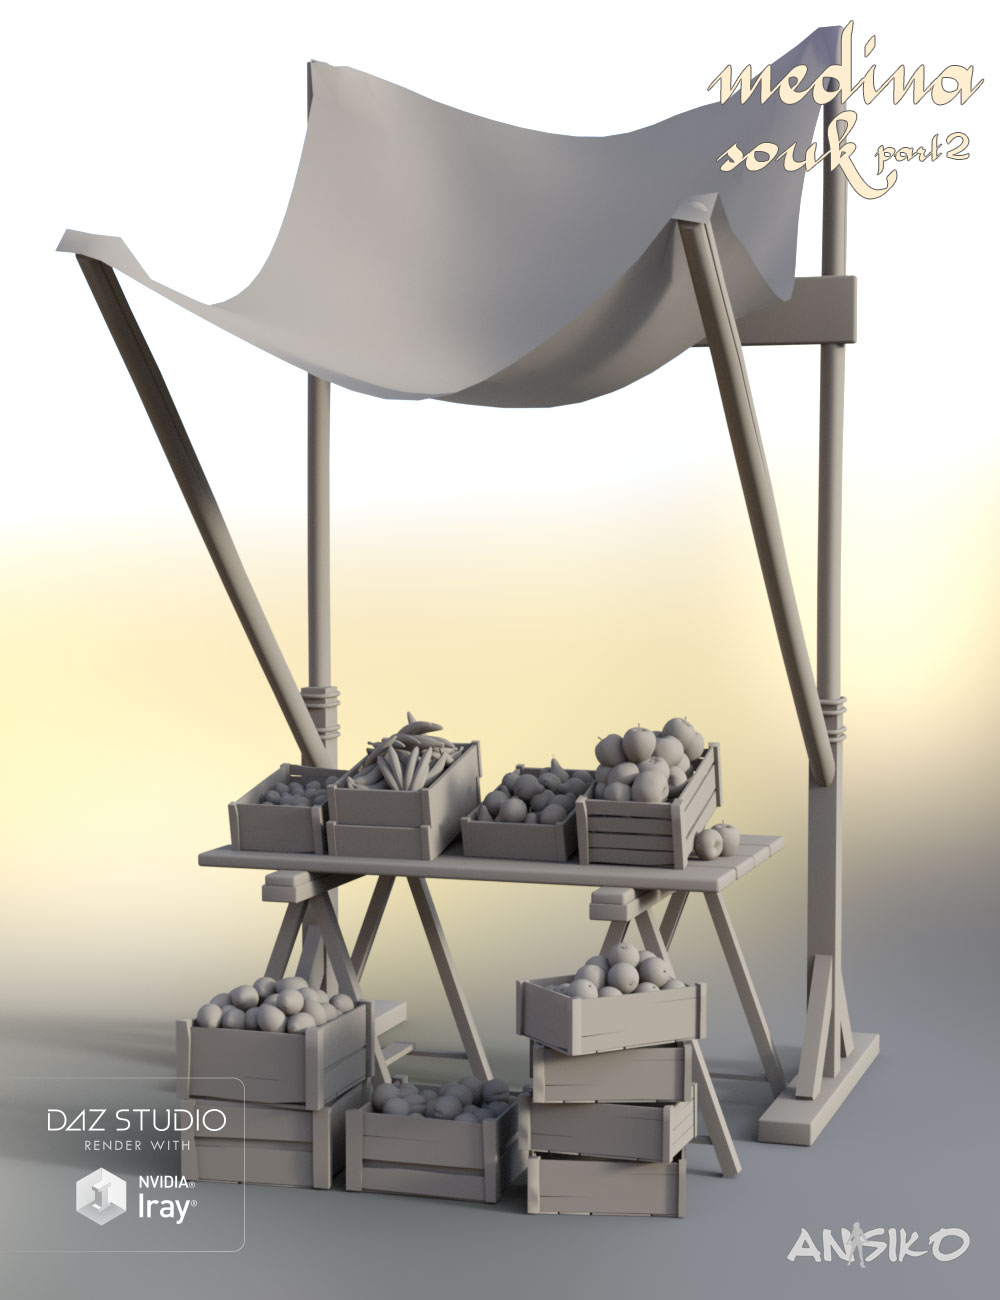 Medina Souk 1 by: Ansiko, 3D Models by Daz 3D